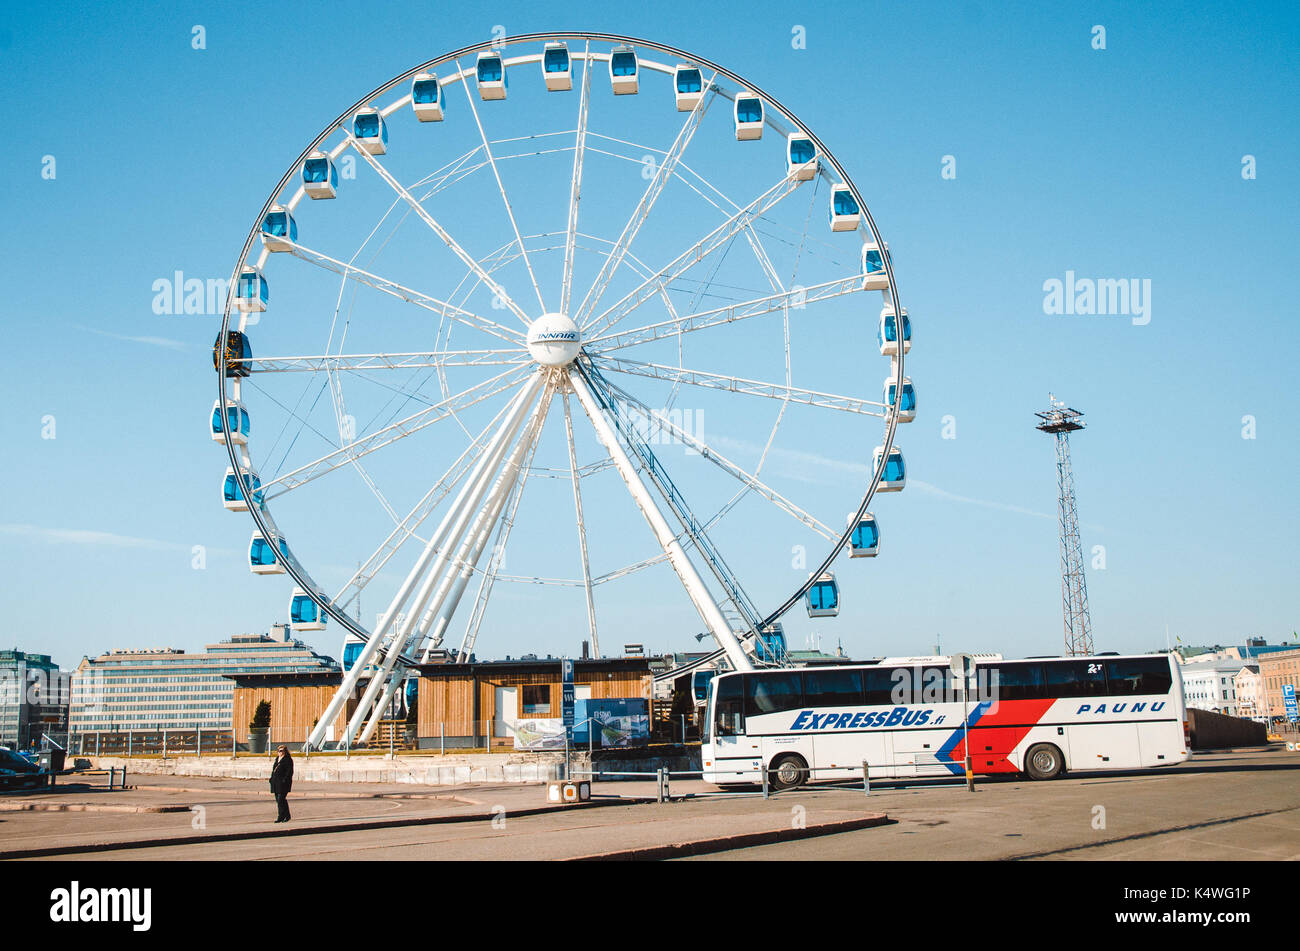 HELSINKI, FINNLAND - März, 17, 2015: Pkw Bus steht vor Riesenrad im Hafen von Helsinki, Finnland. Stockfoto